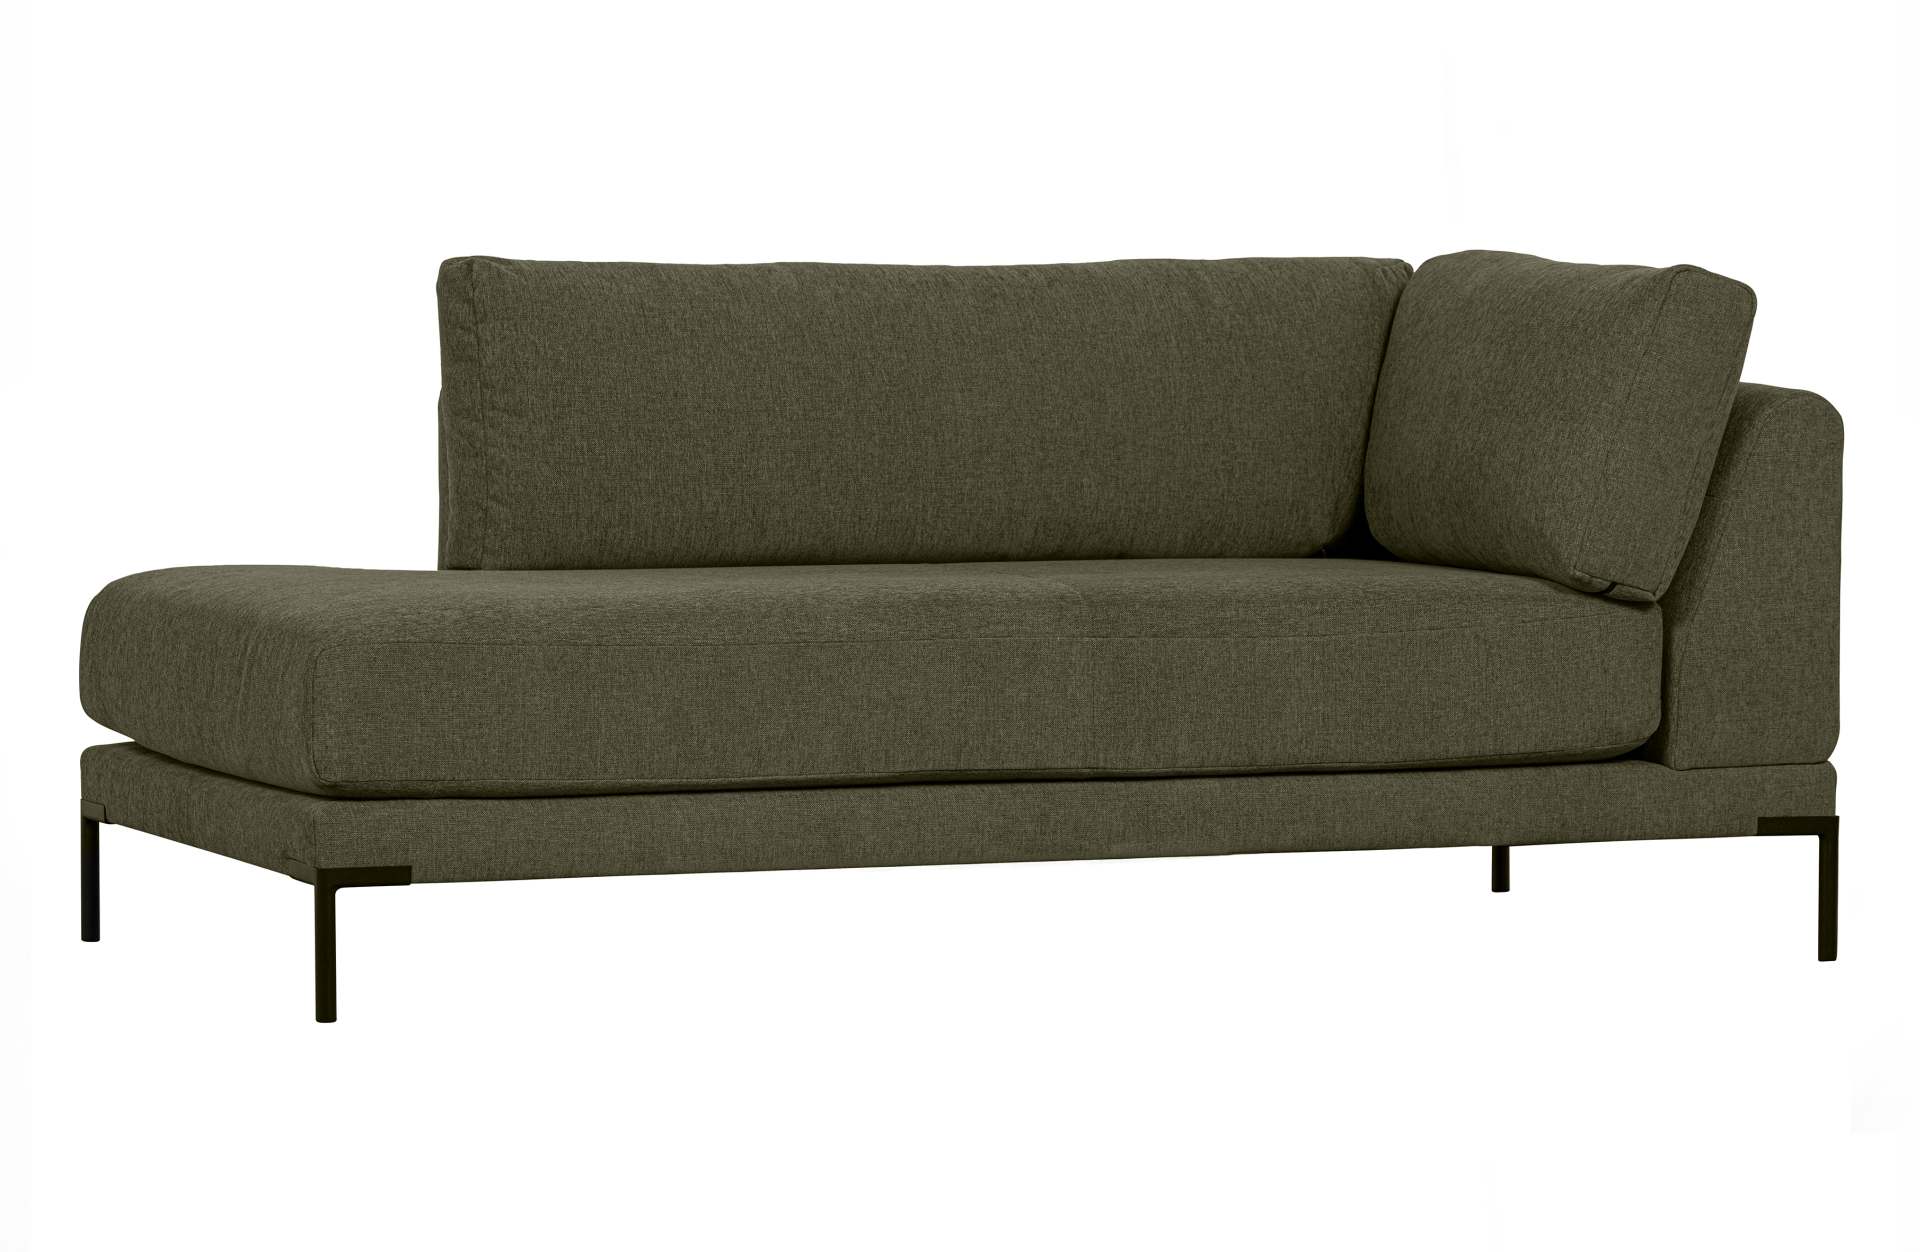 Das Modulsofa Couple Lounge überzeugt mit seinem modernen Design. Das Lounge Element mit der Ausführung Links wurde aus Melange Stoff gefertigt, welcher einen einen grünen Farbton besitzen. Das Gestell ist aus Metall und hat eine schwarze Farbe. Das Eleme